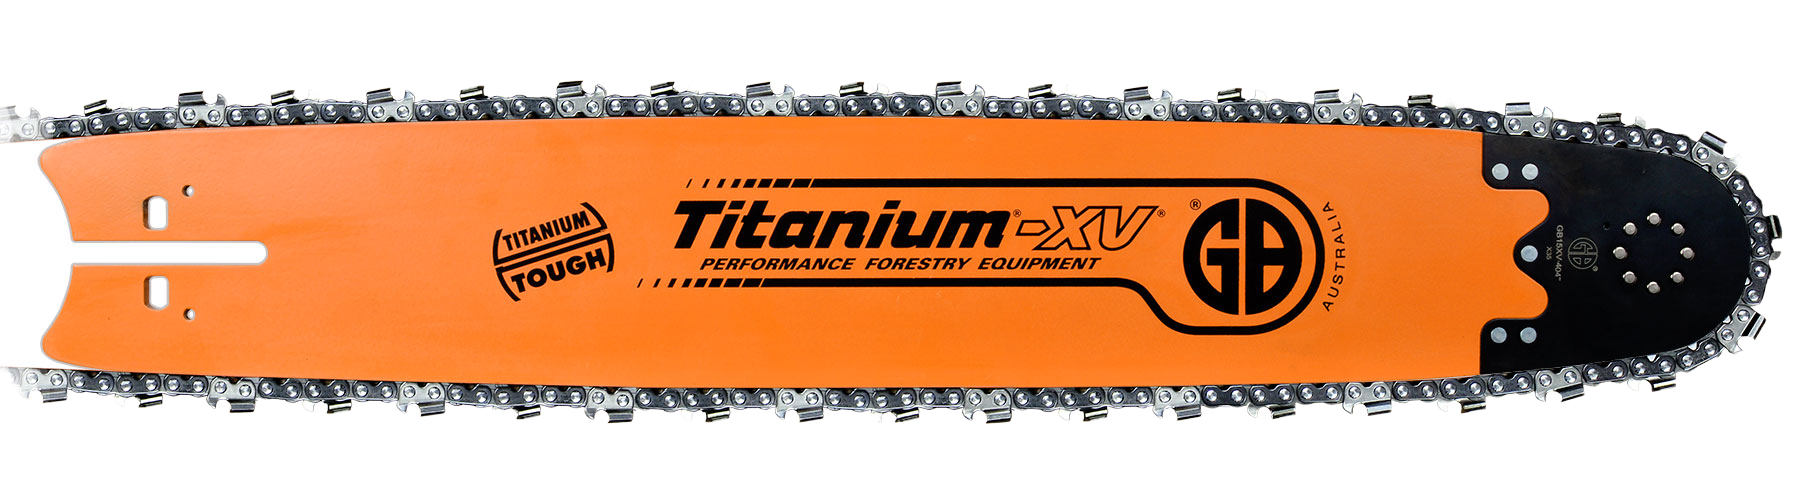 GB Titanium XV Harvester Bars